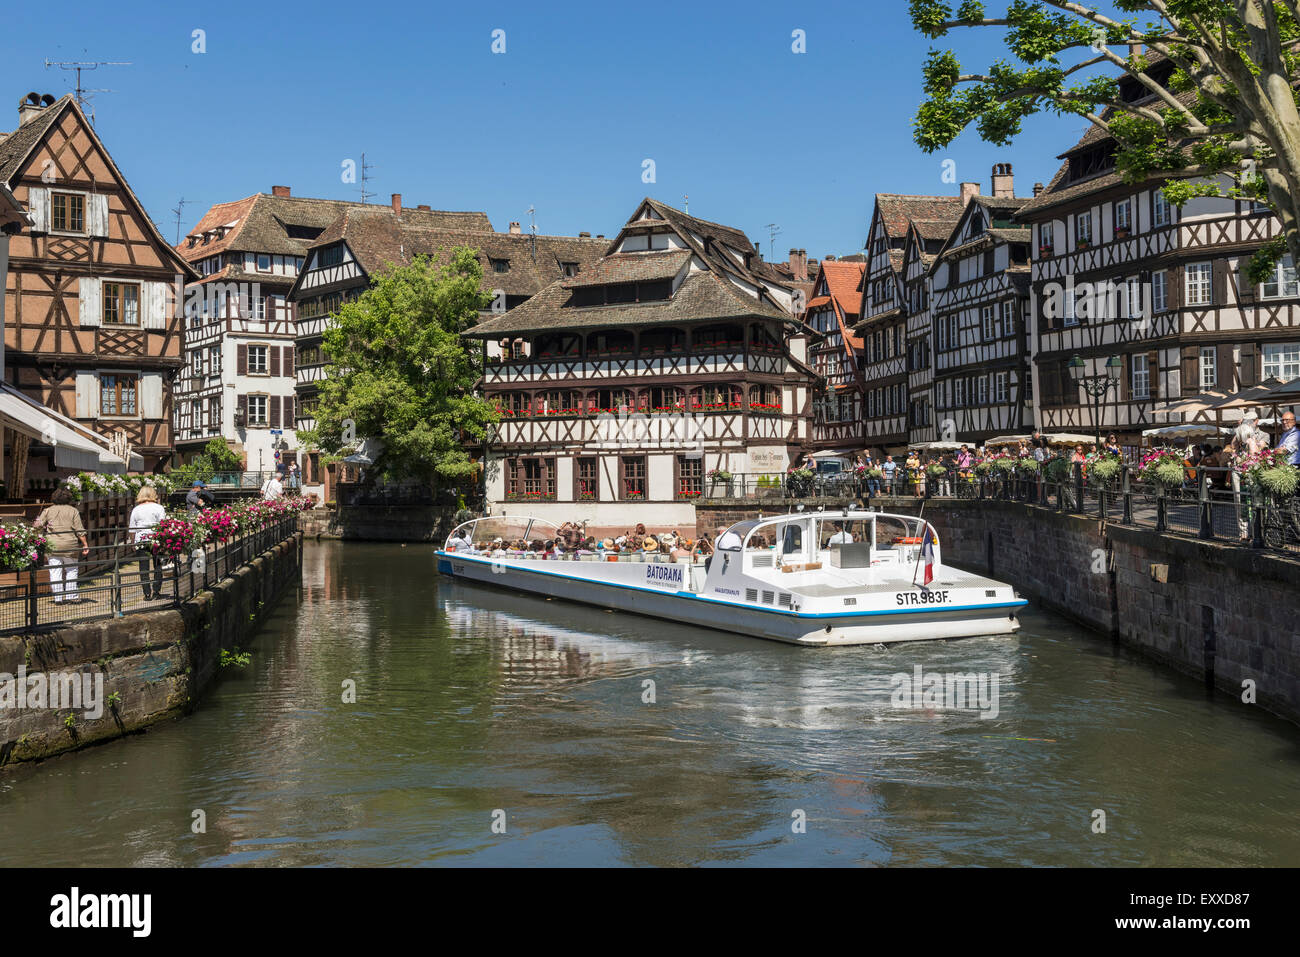 Bateau de tourisme dans la vieille ville de La Petite France, Strasbourg, France, Europe Banque D'Images